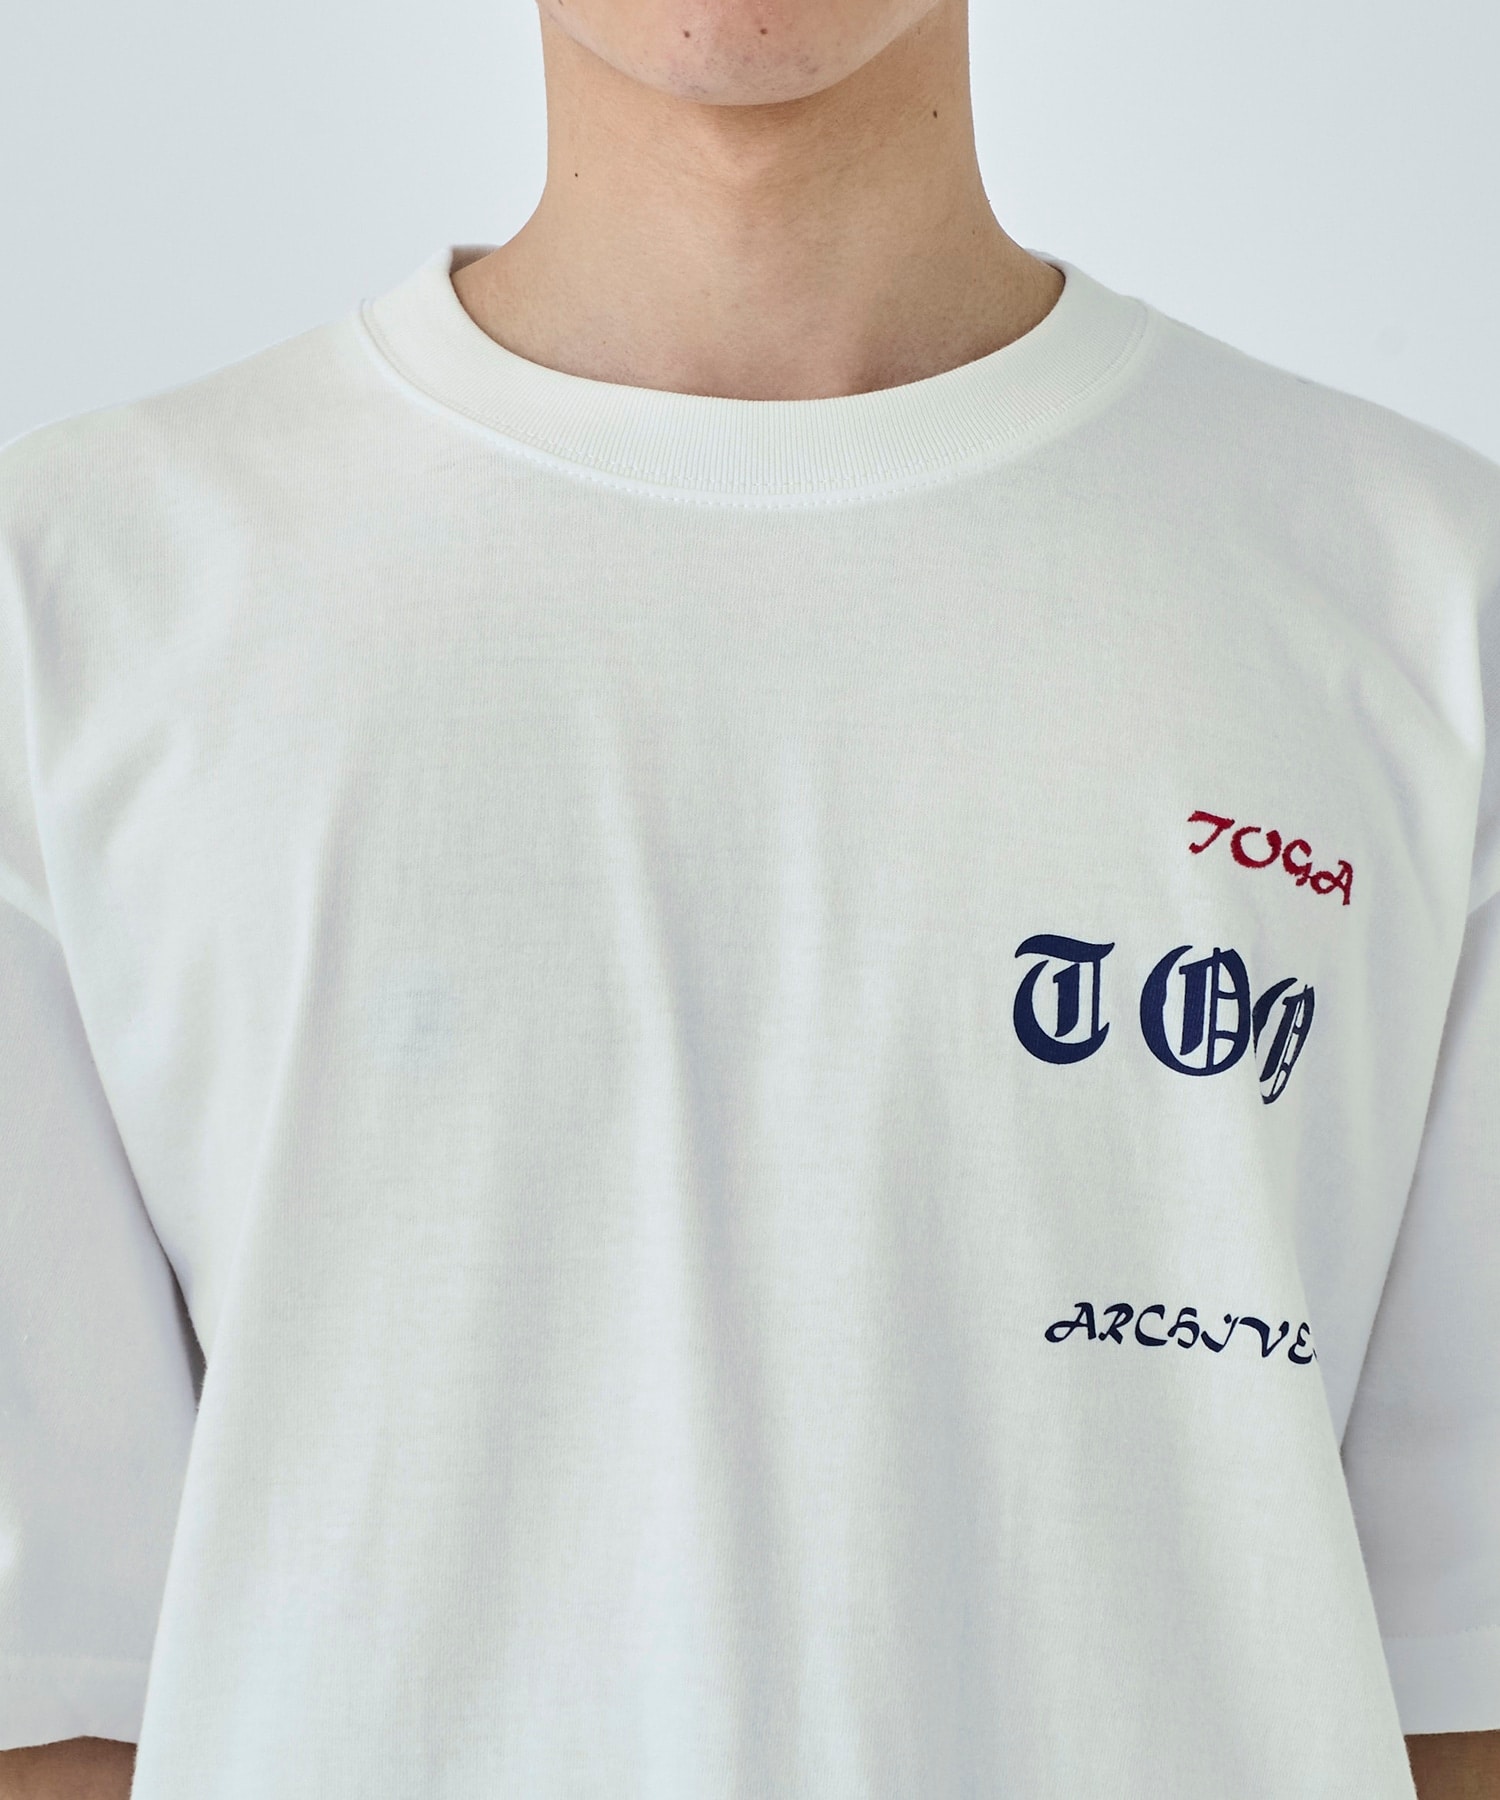 Print T-shirt TOGA VIRILIS